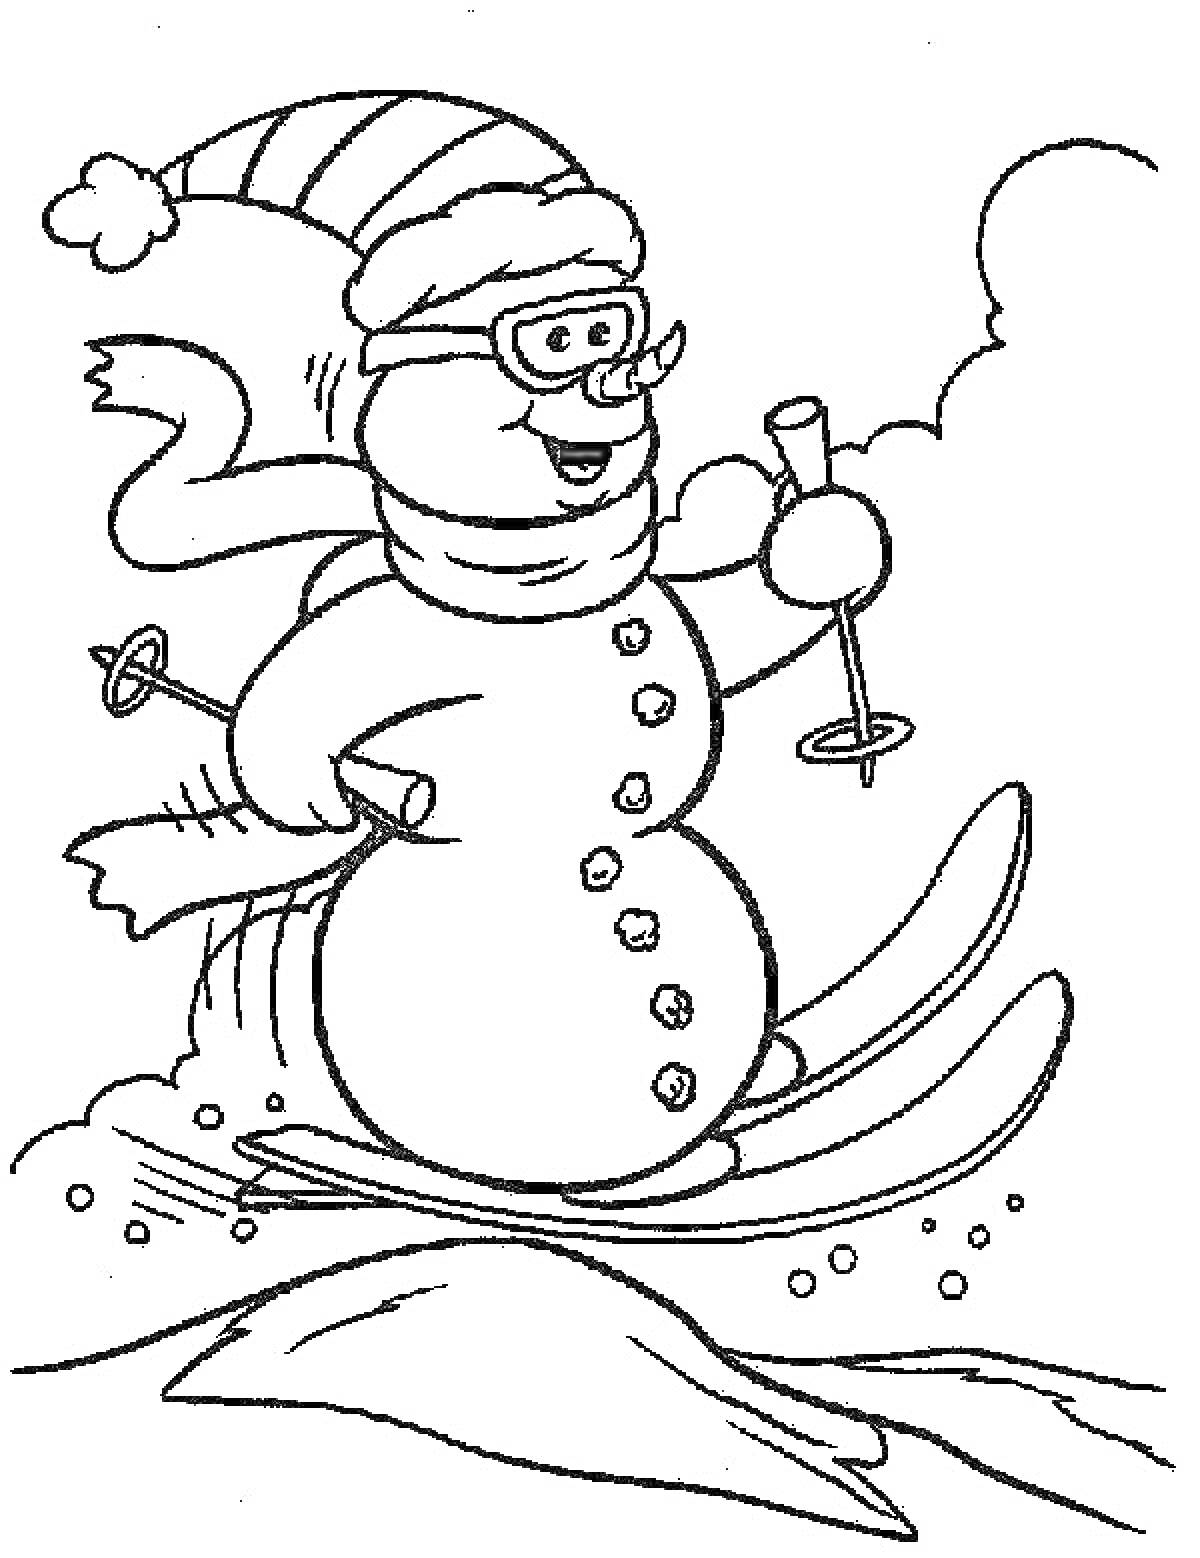 Снеговик на лыжах с палками, в шапке и шарфе, в очках на фоне снега.